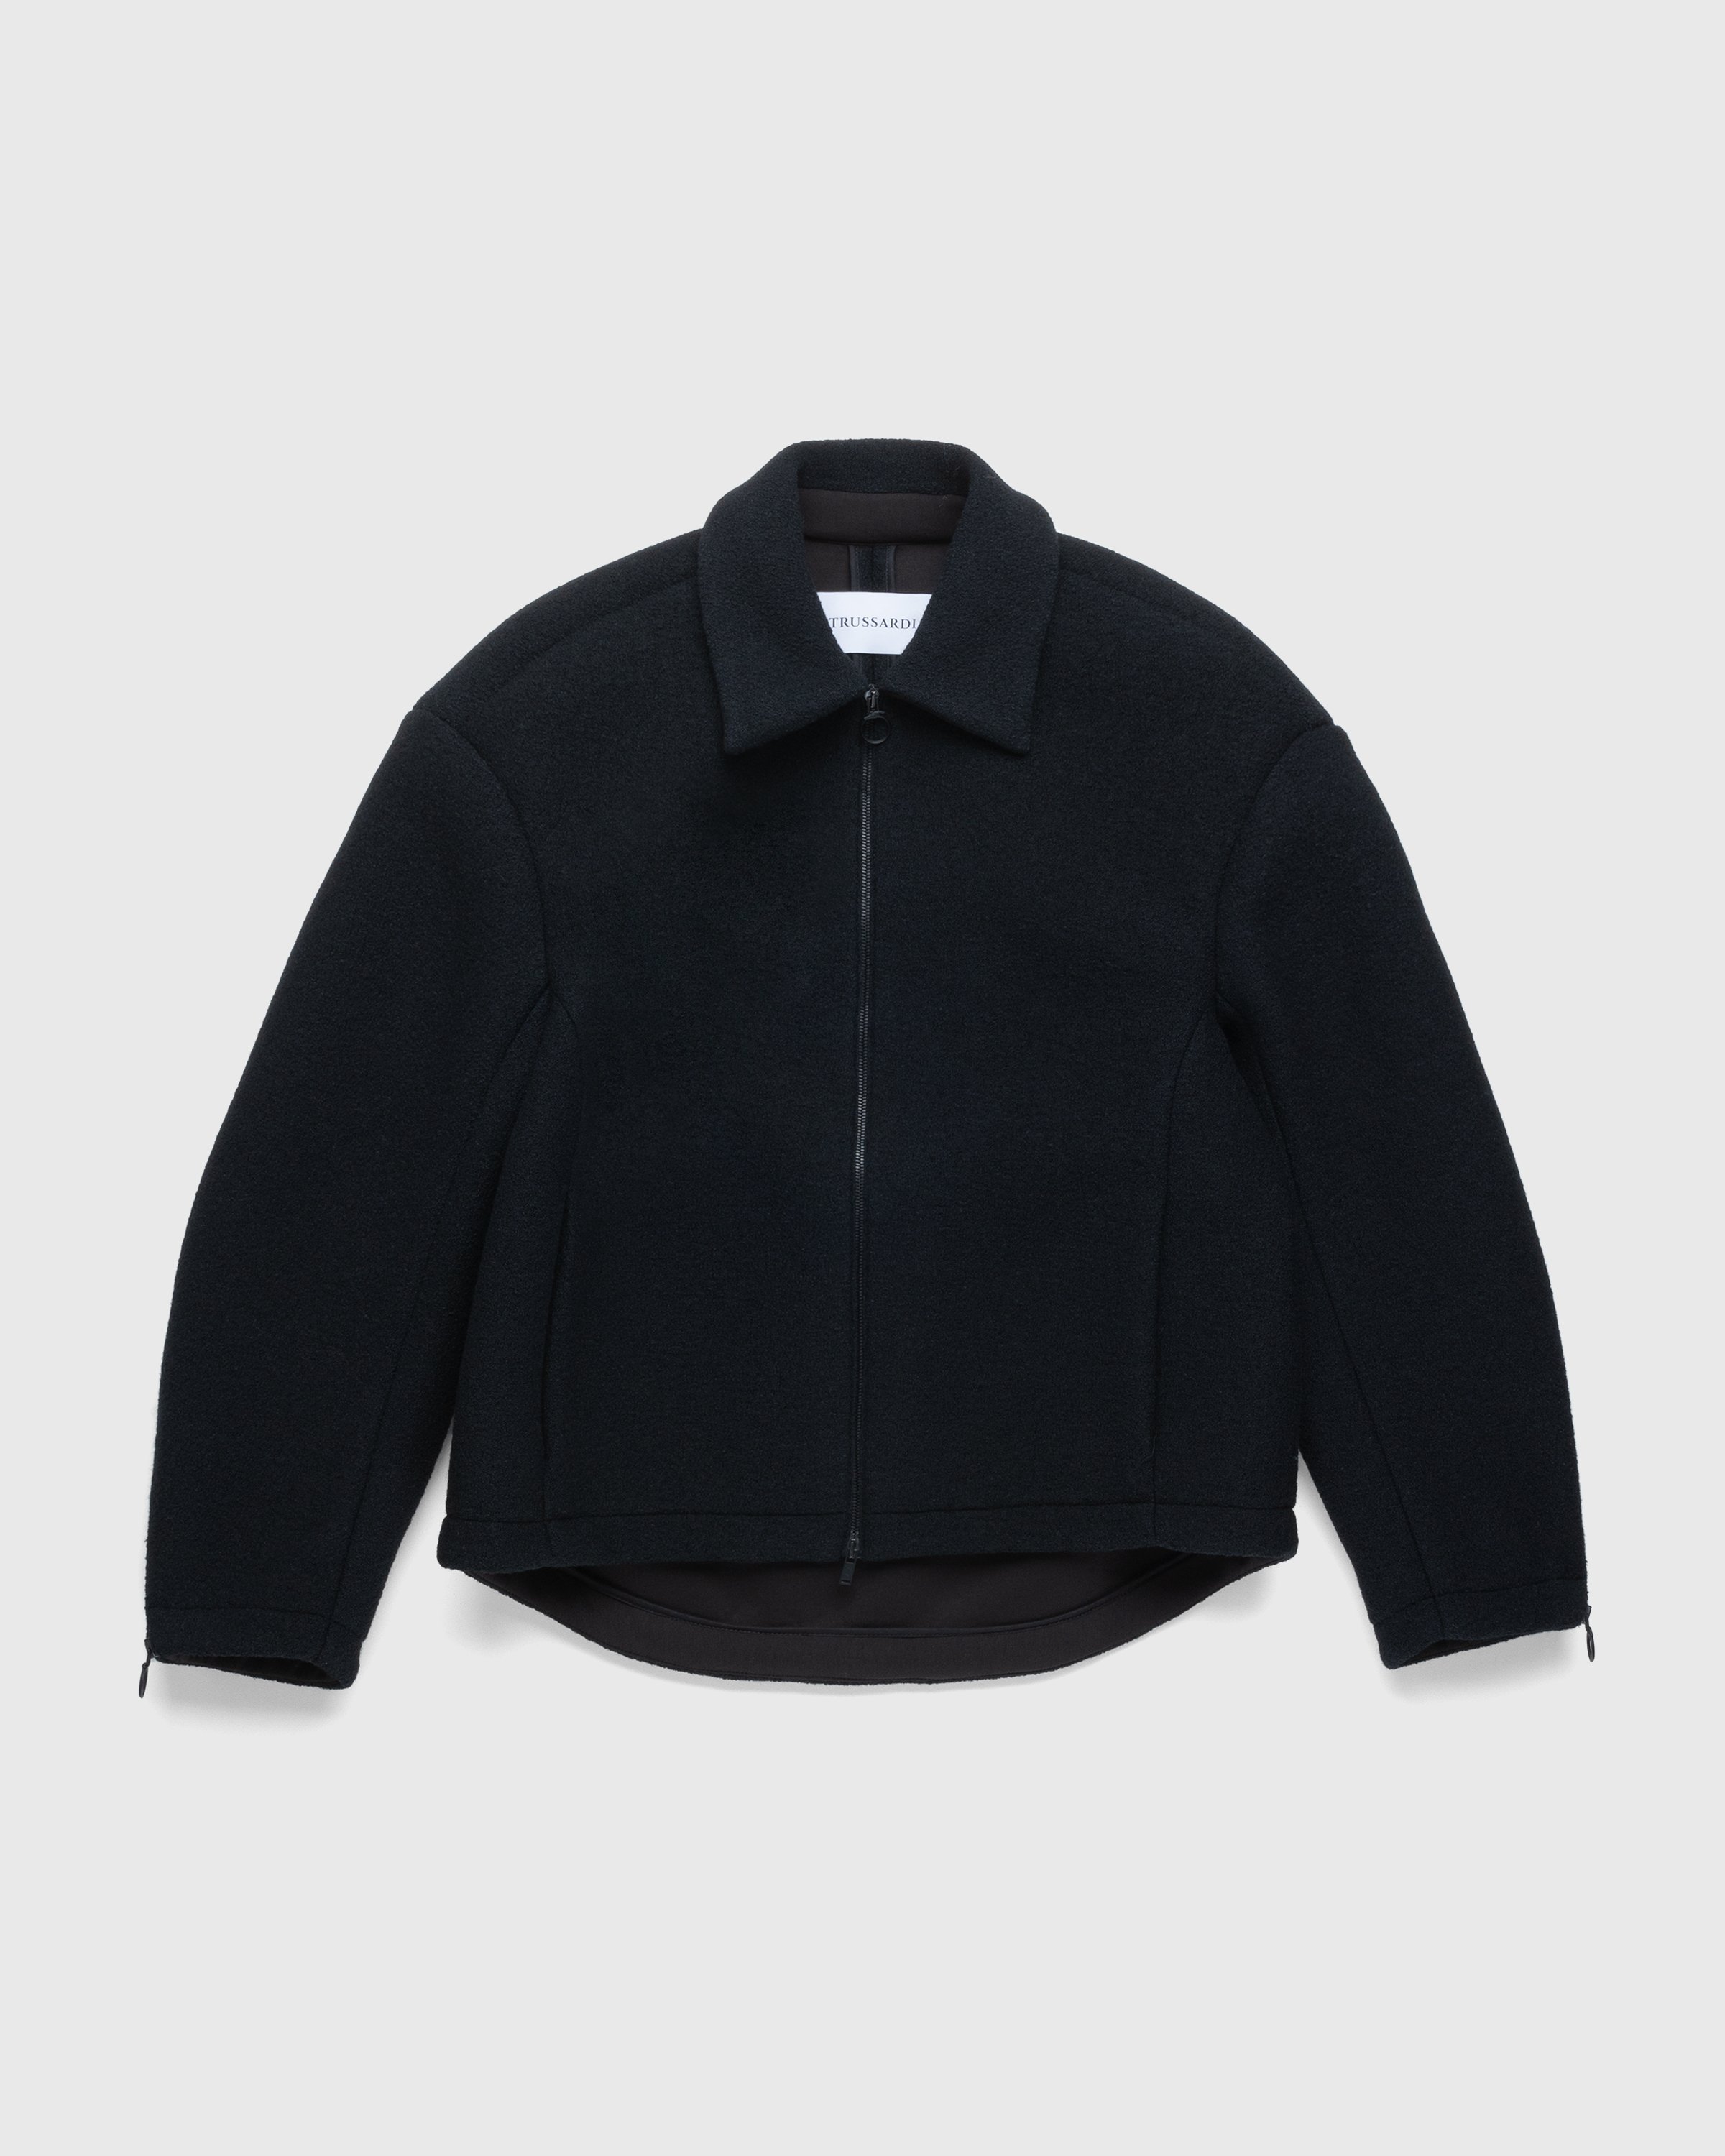 Trussardi - Boucle Jersey Scuba Jacket Black - Clothing - Black - Image 1